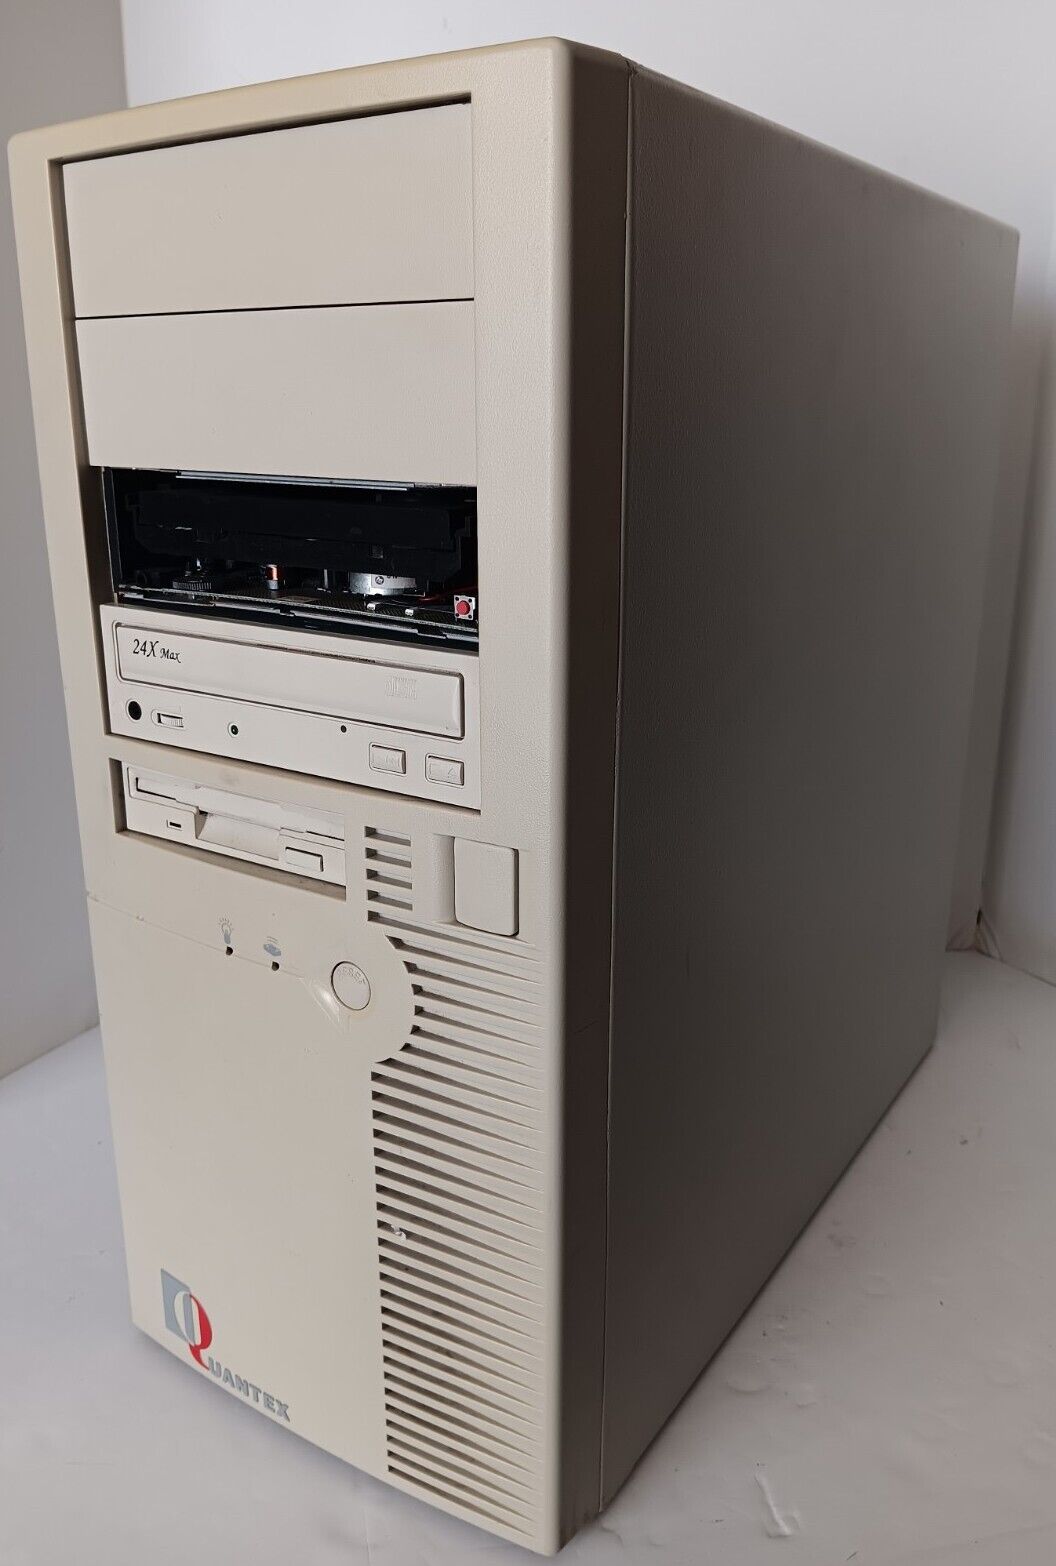 Quantex MB-8500TVX-A Socket 7 Baby AT Case PC Beige Computer Tower Parts/Repair